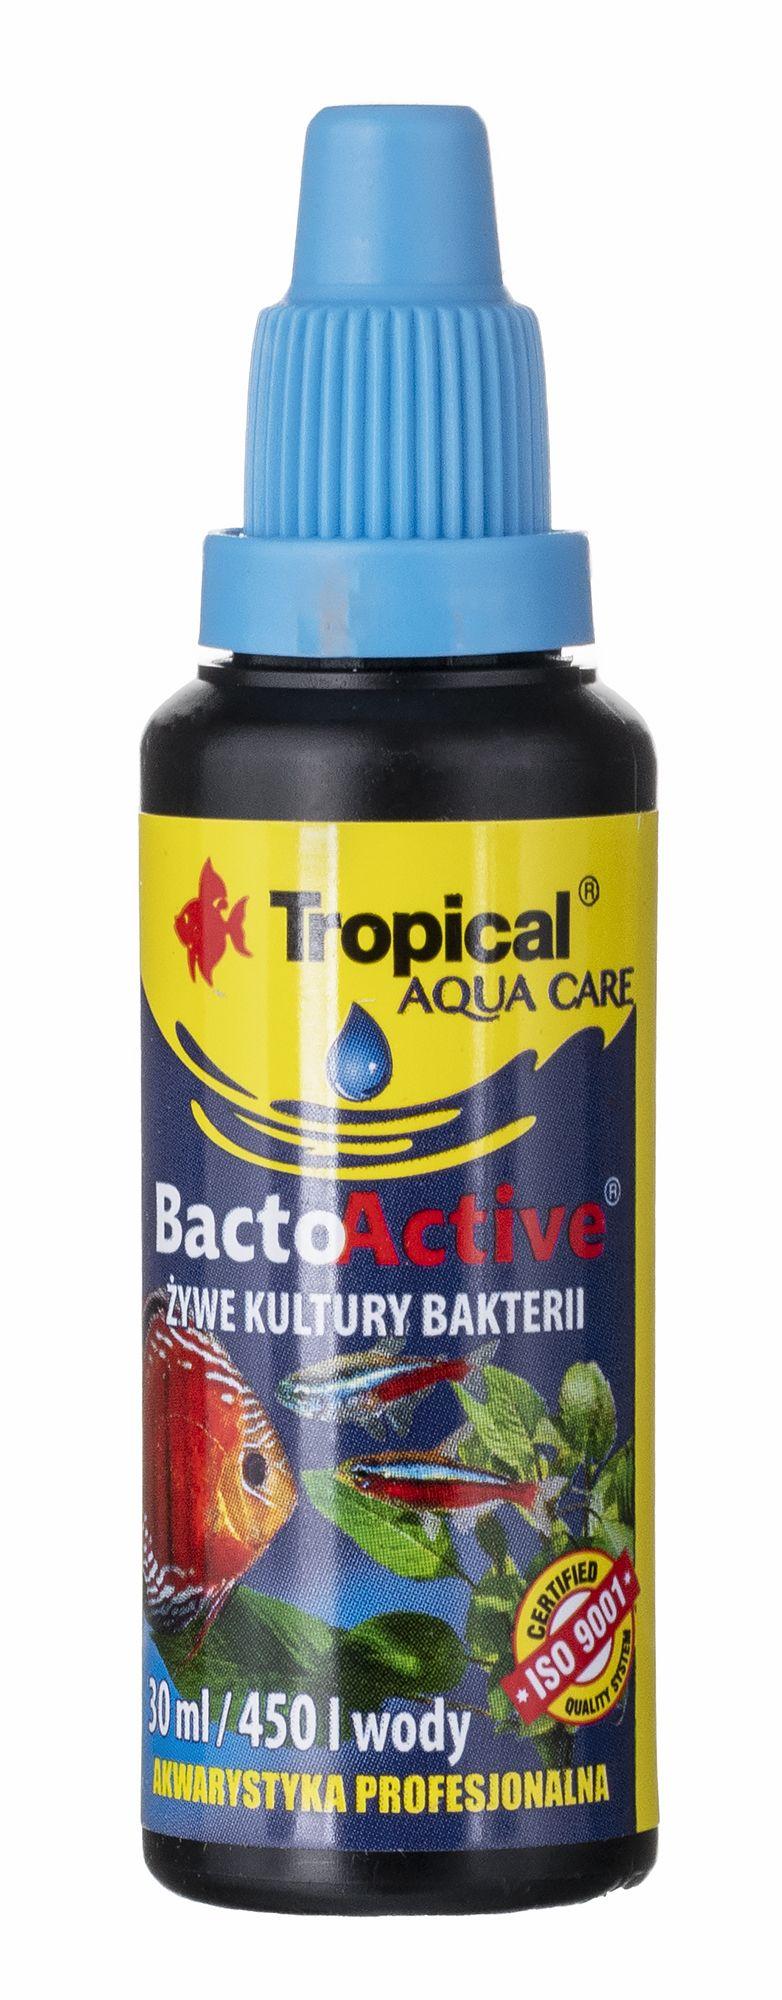 TROPICAL Bacto-Active - live bacteria cultures for aquarium - 30 ml